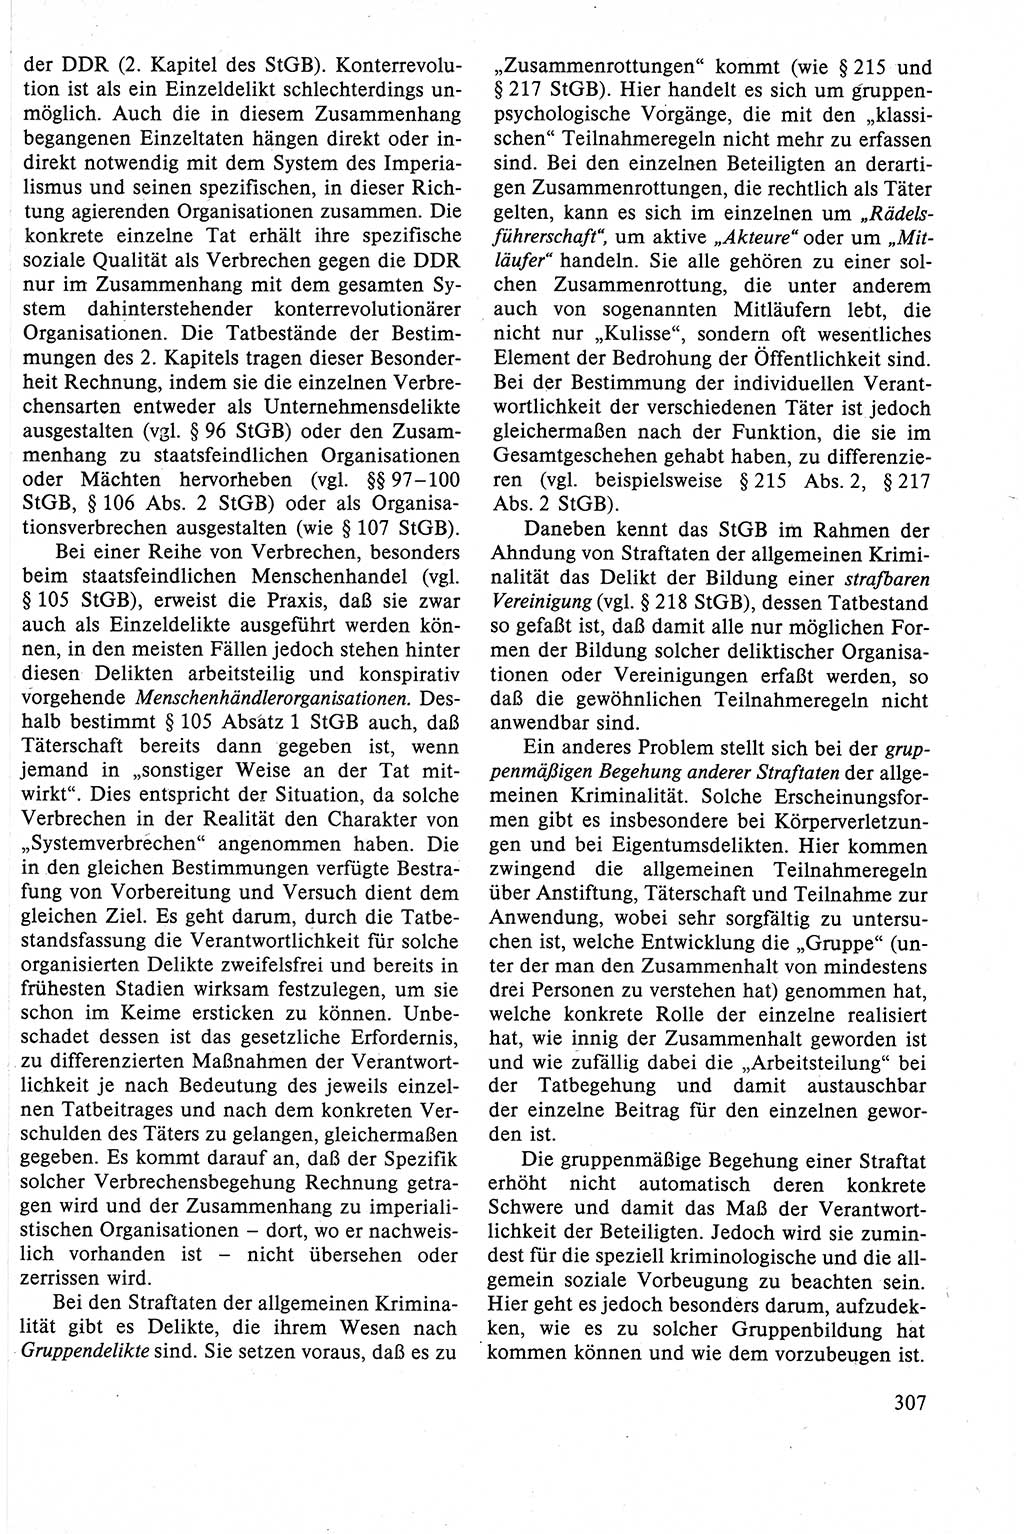 Strafrecht der DDR (Deutsche Demokratische Republik), Lehrbuch 1988, Seite 307 (Strafr. DDR Lb. 1988, S. 307)